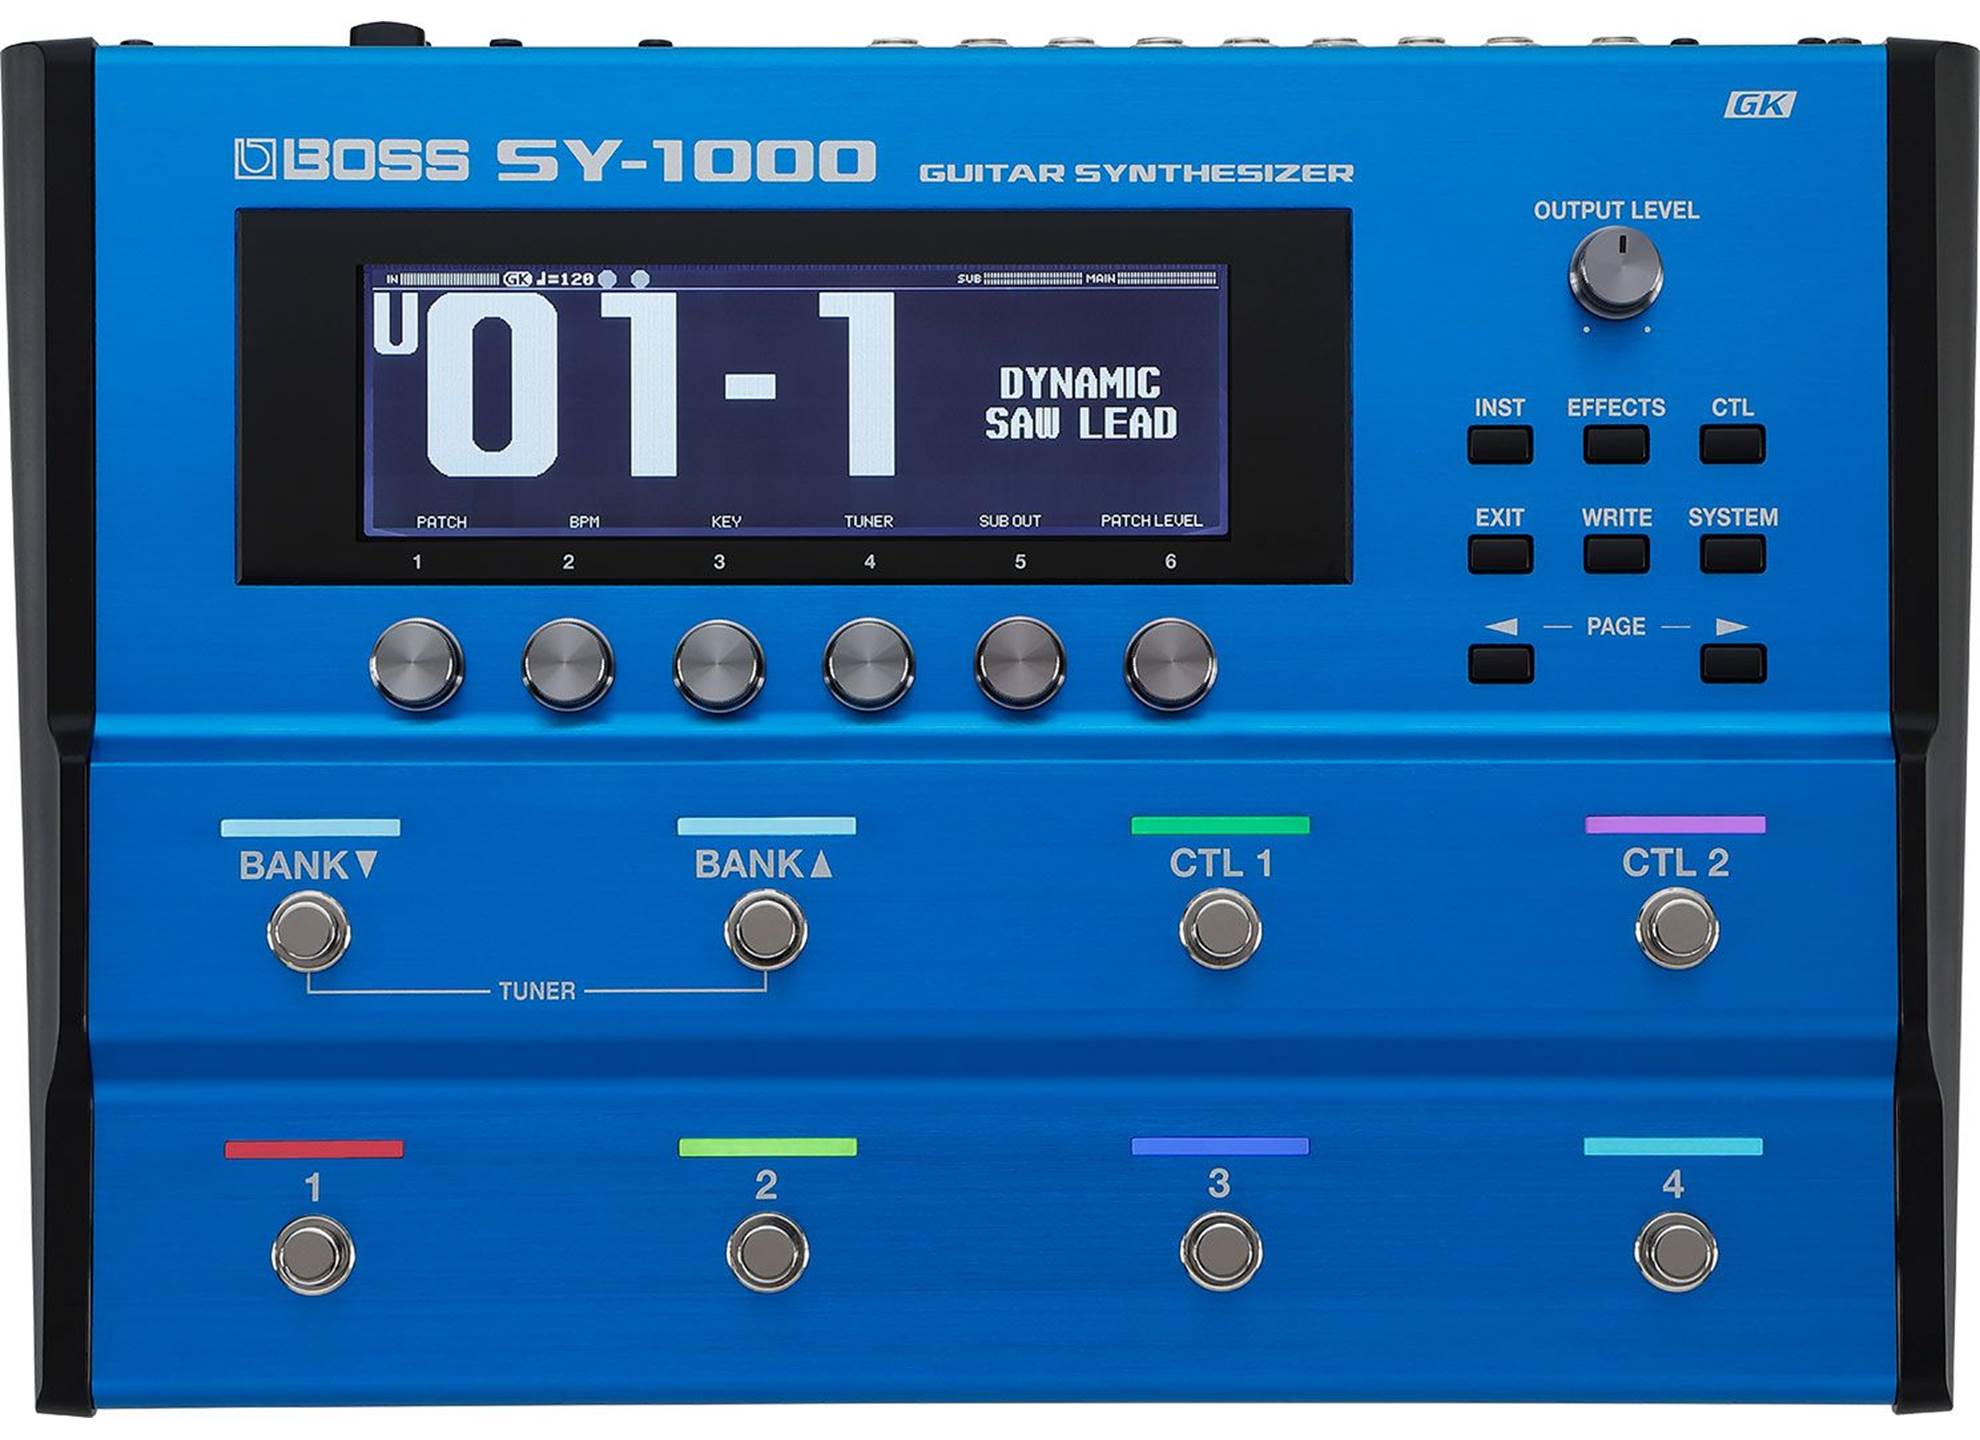 SY-1000